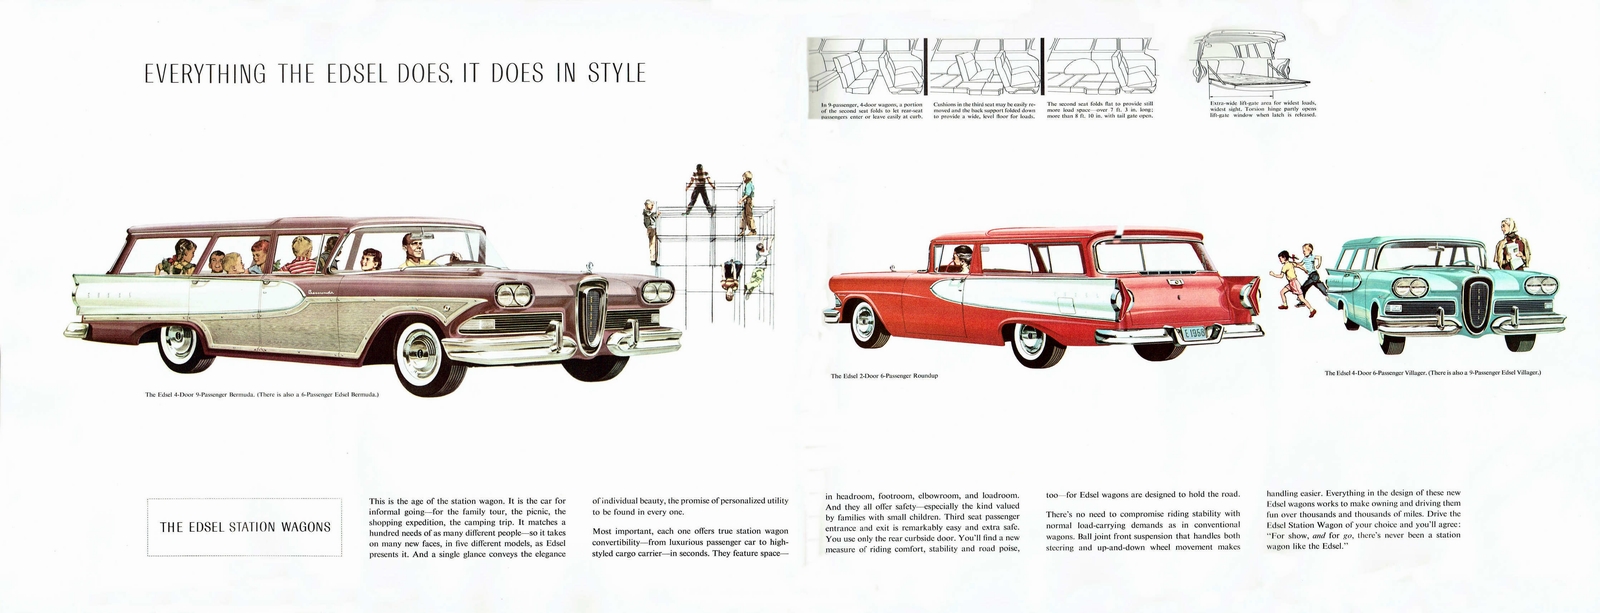 n_1958 Edsel Full Line Prestige-24-25.jpg